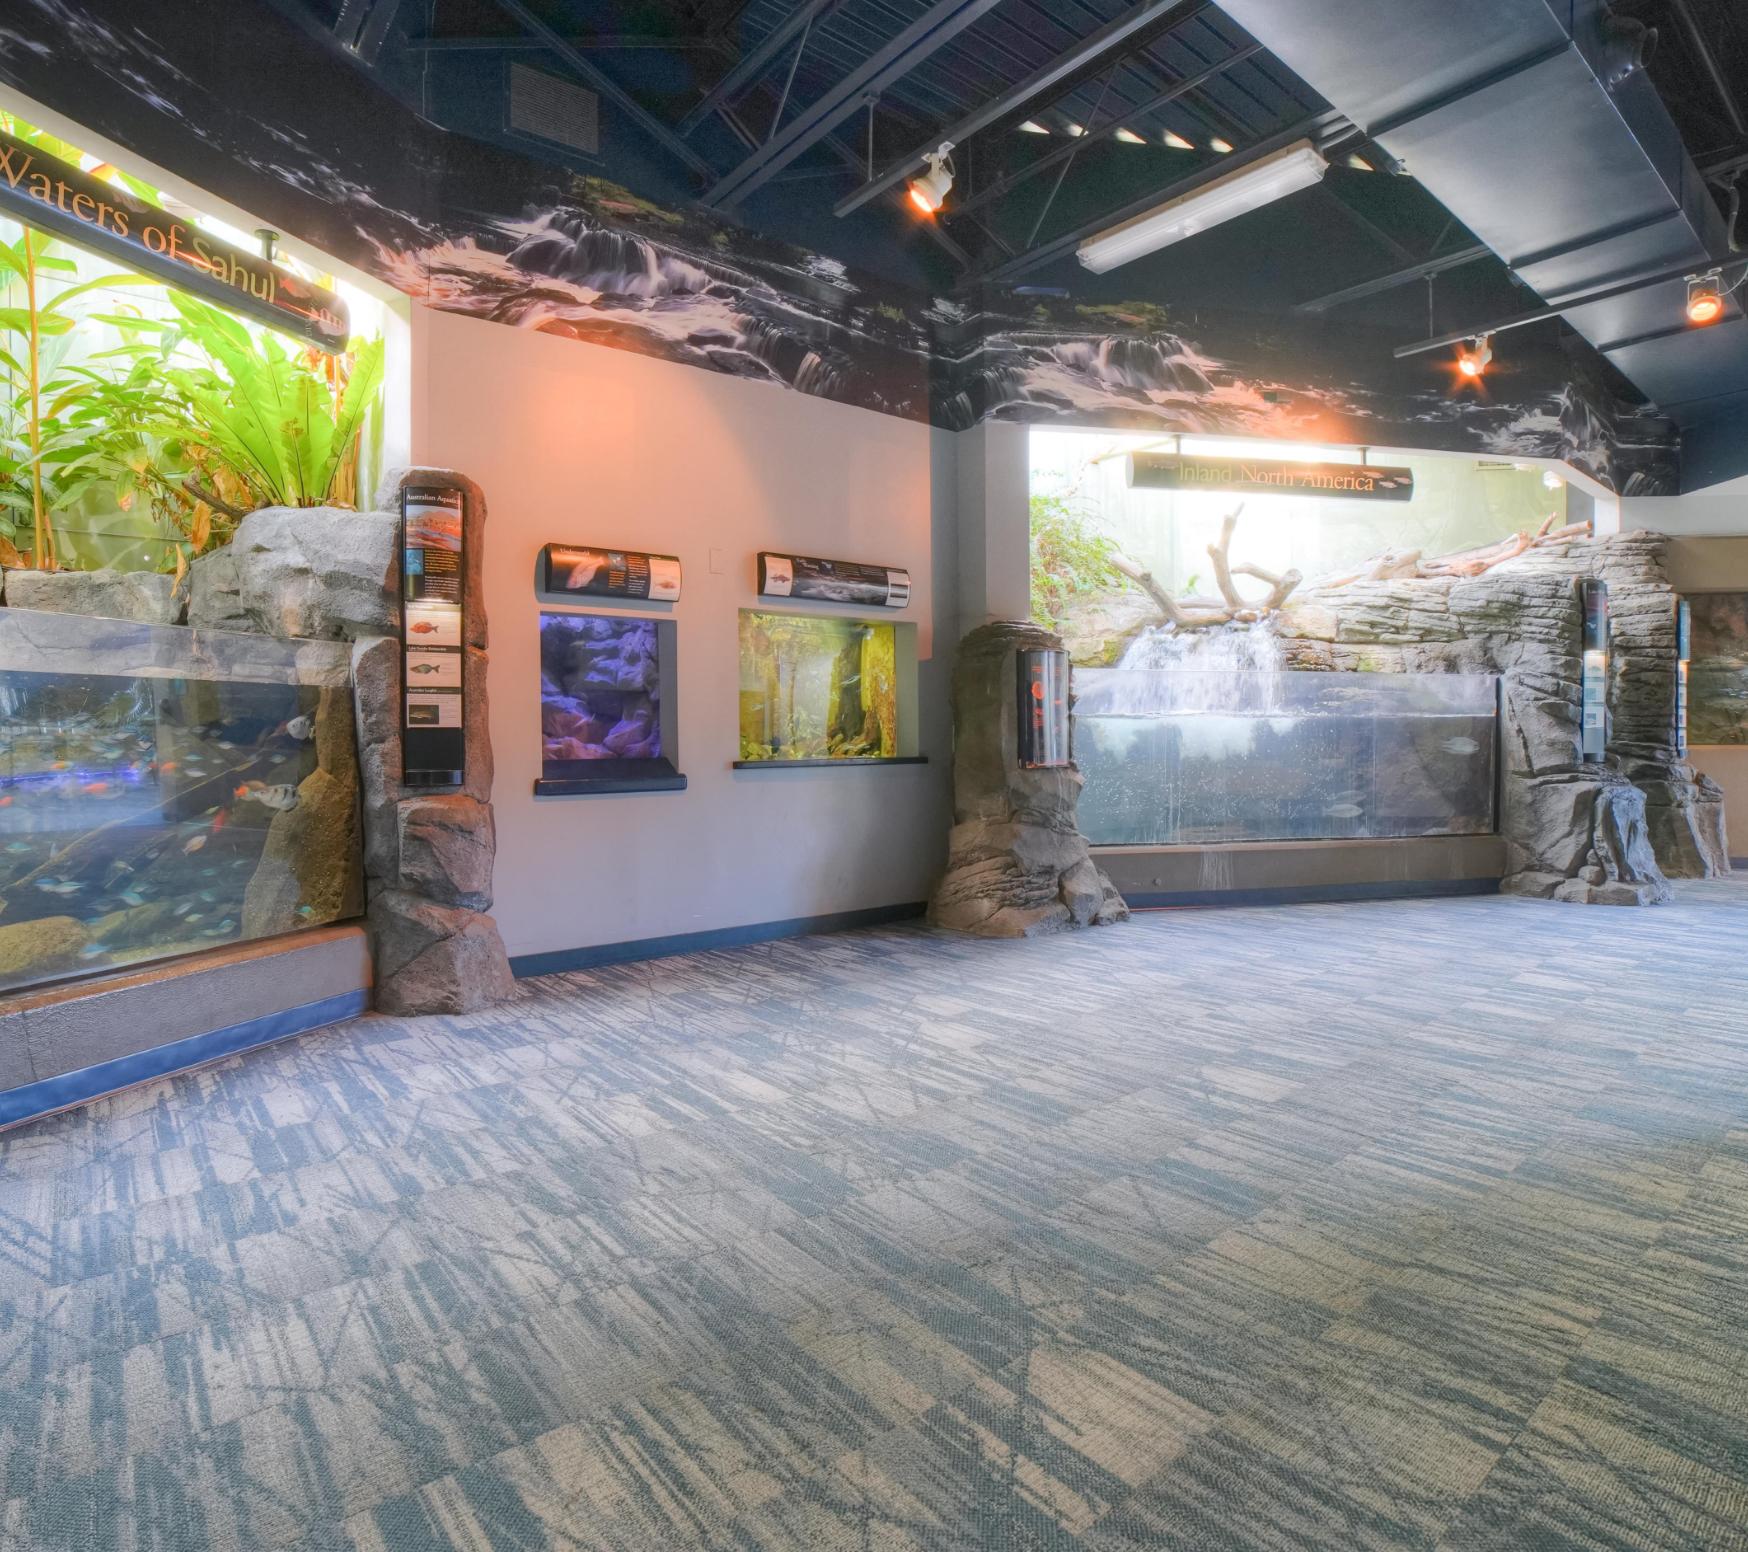 Inside PPG Aquarium